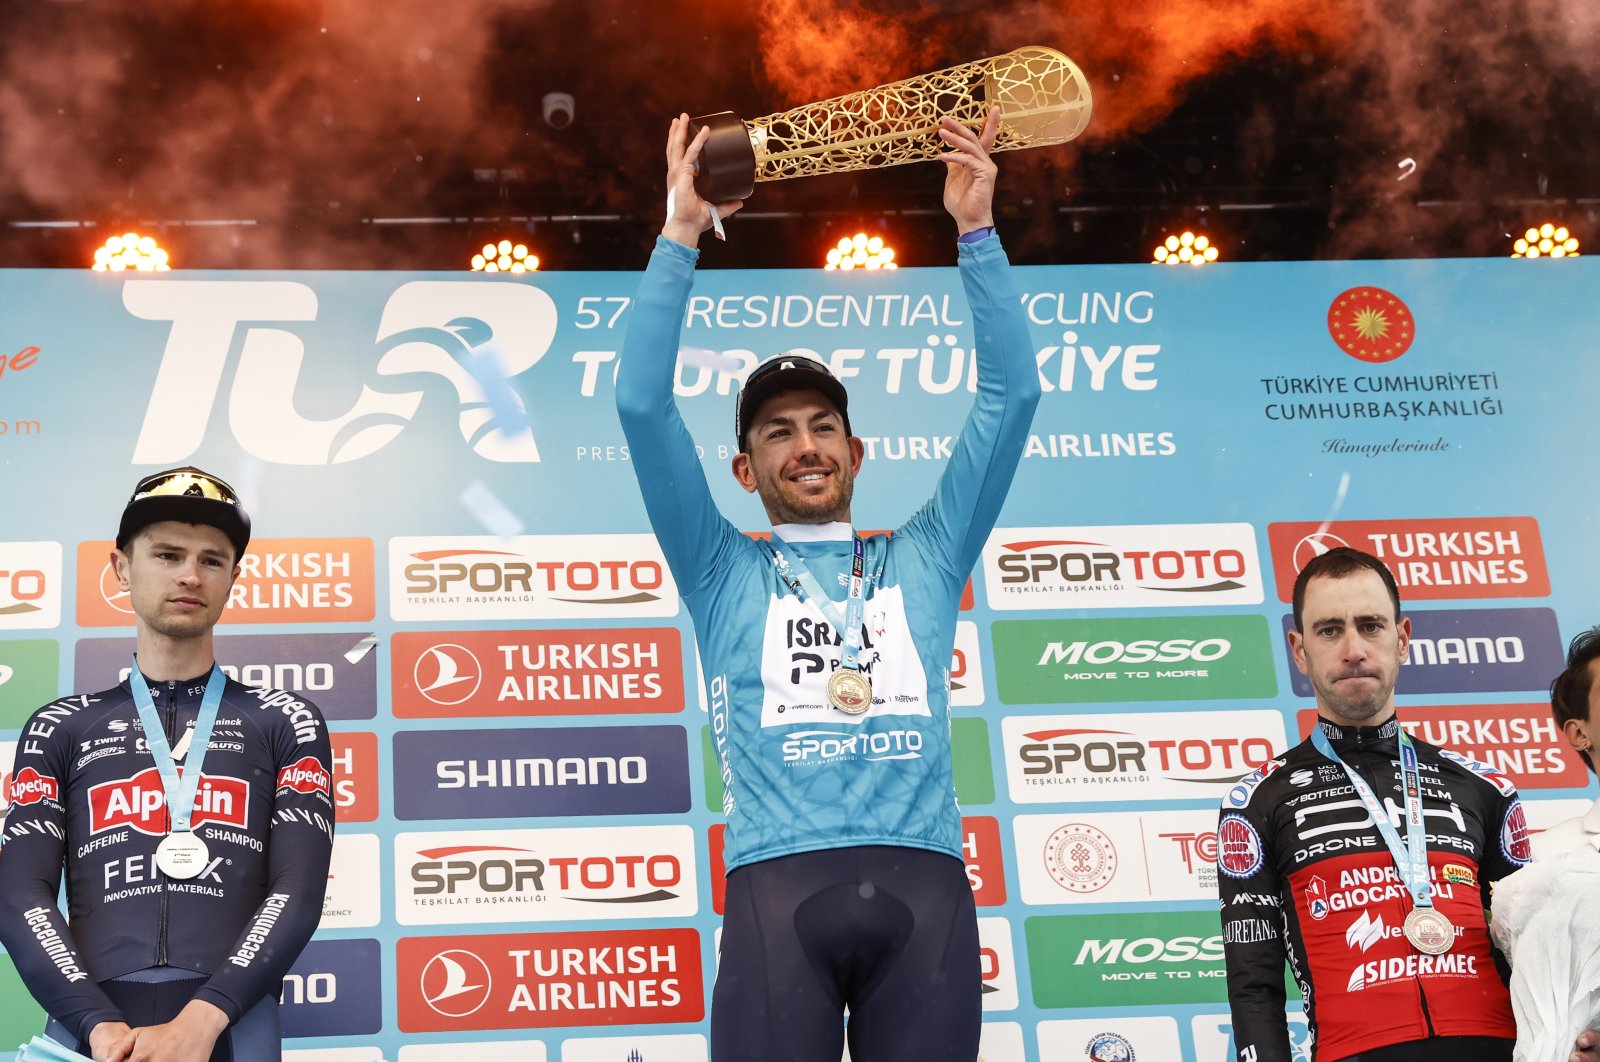 Bevin memenangkan Tur Türkiye setelah cuaca buruk membatalkan tahap terakhir